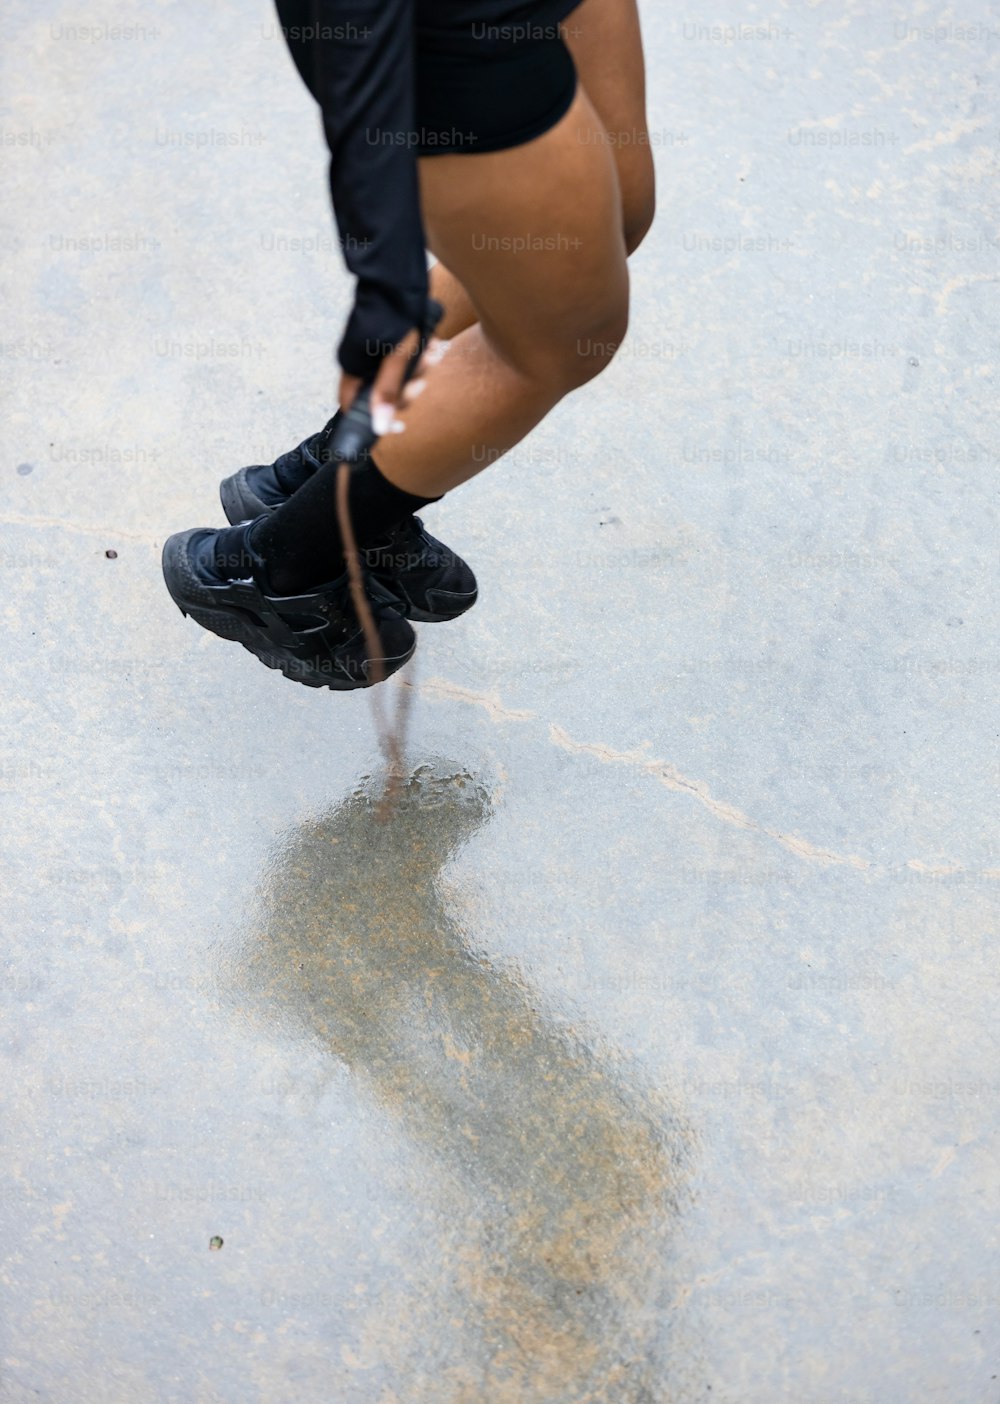 Una persona parada en una patineta sobre una superficie de concreto